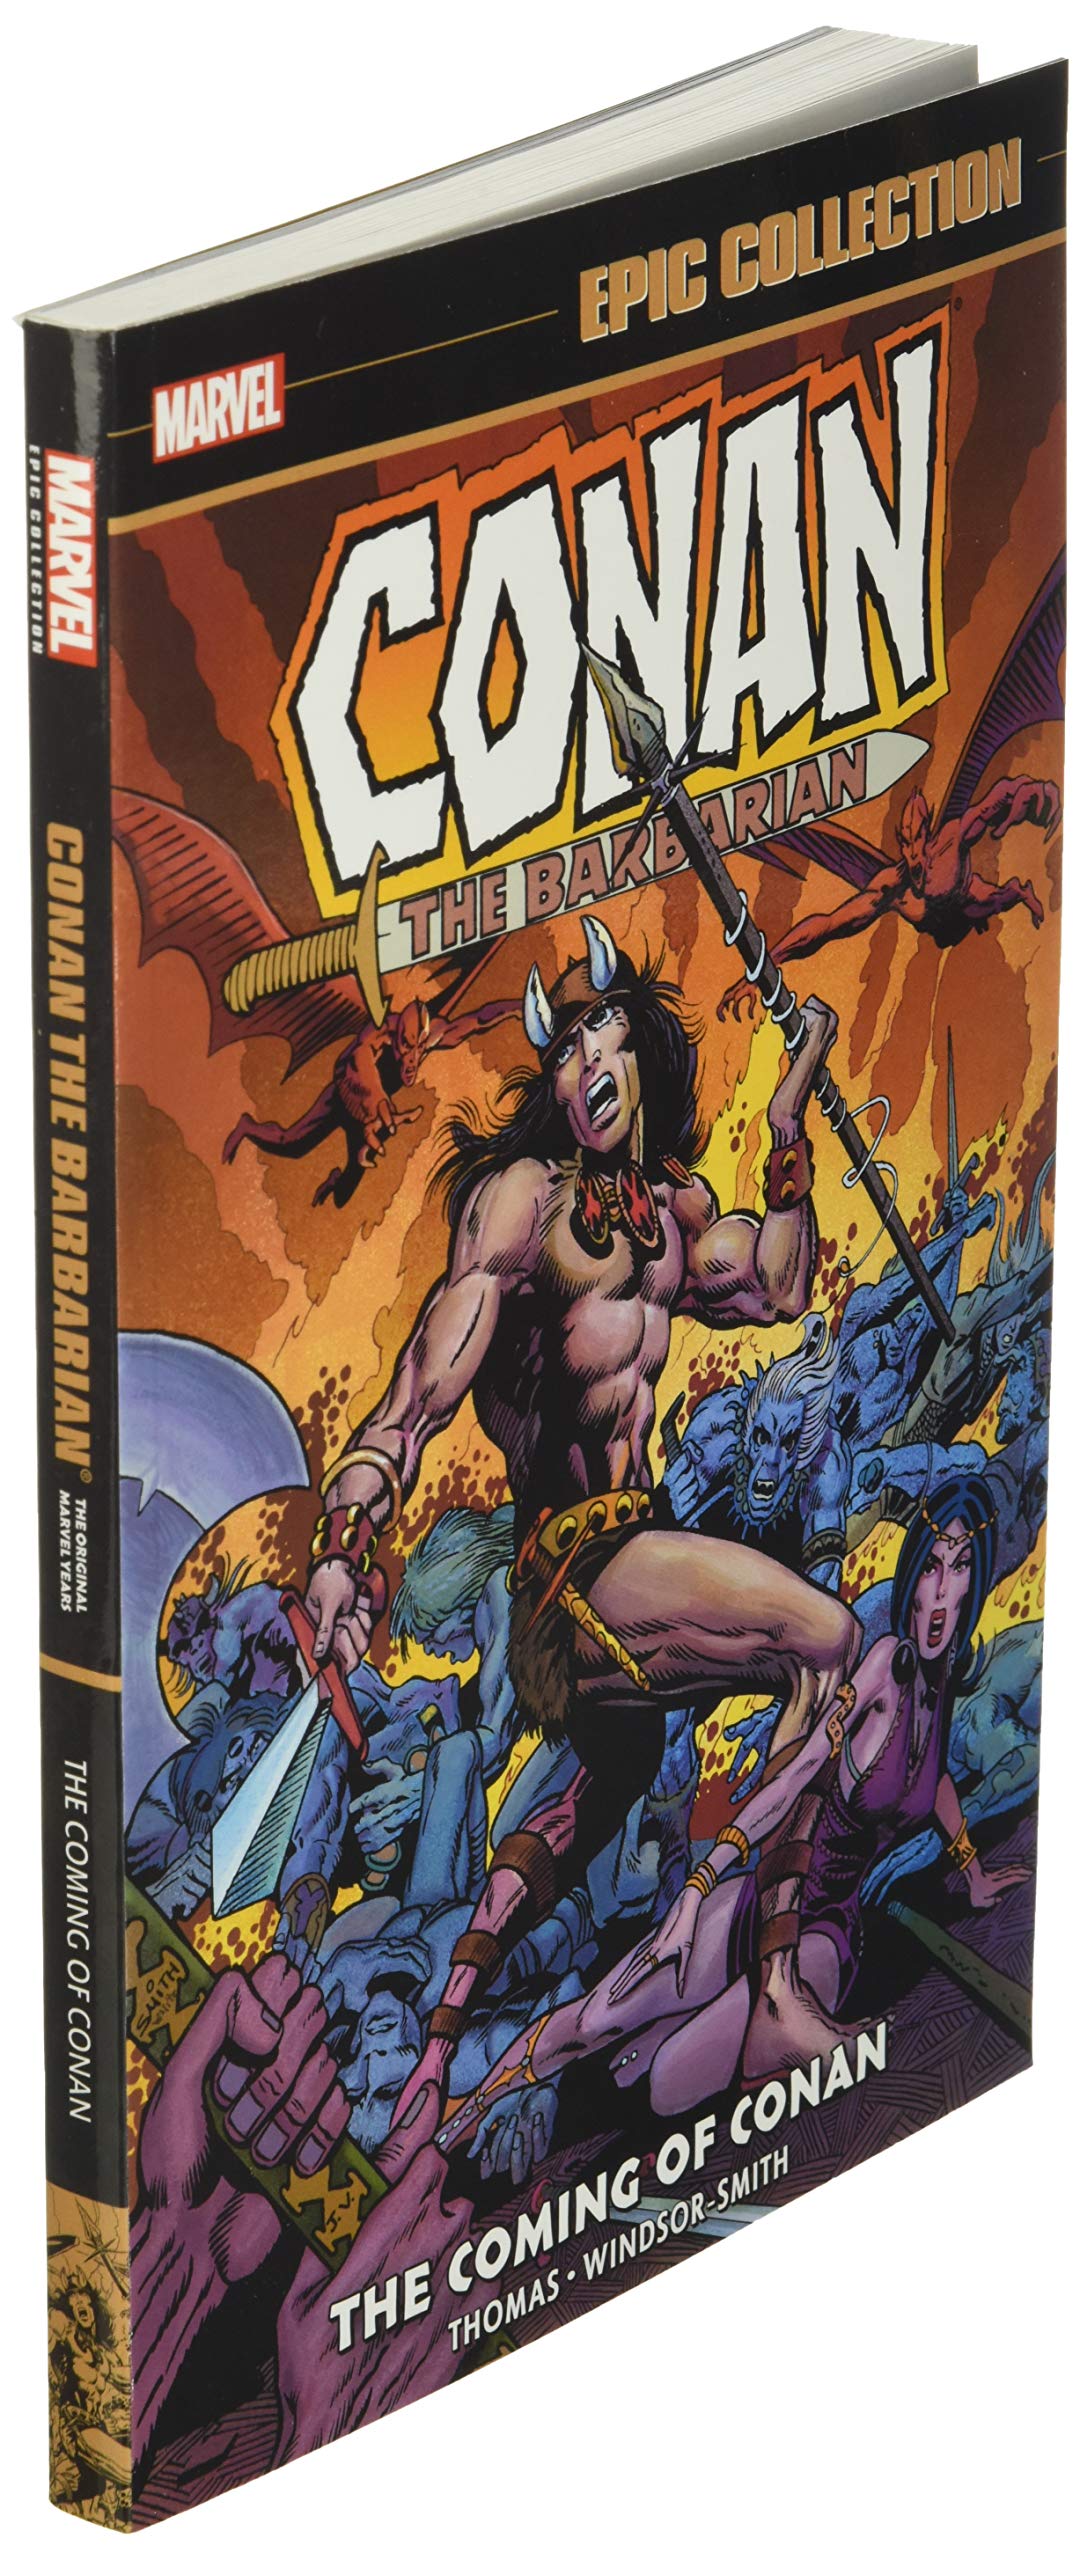 Conan the Barbarian: Epic Collection - Coming of Conan TP - Third Eye